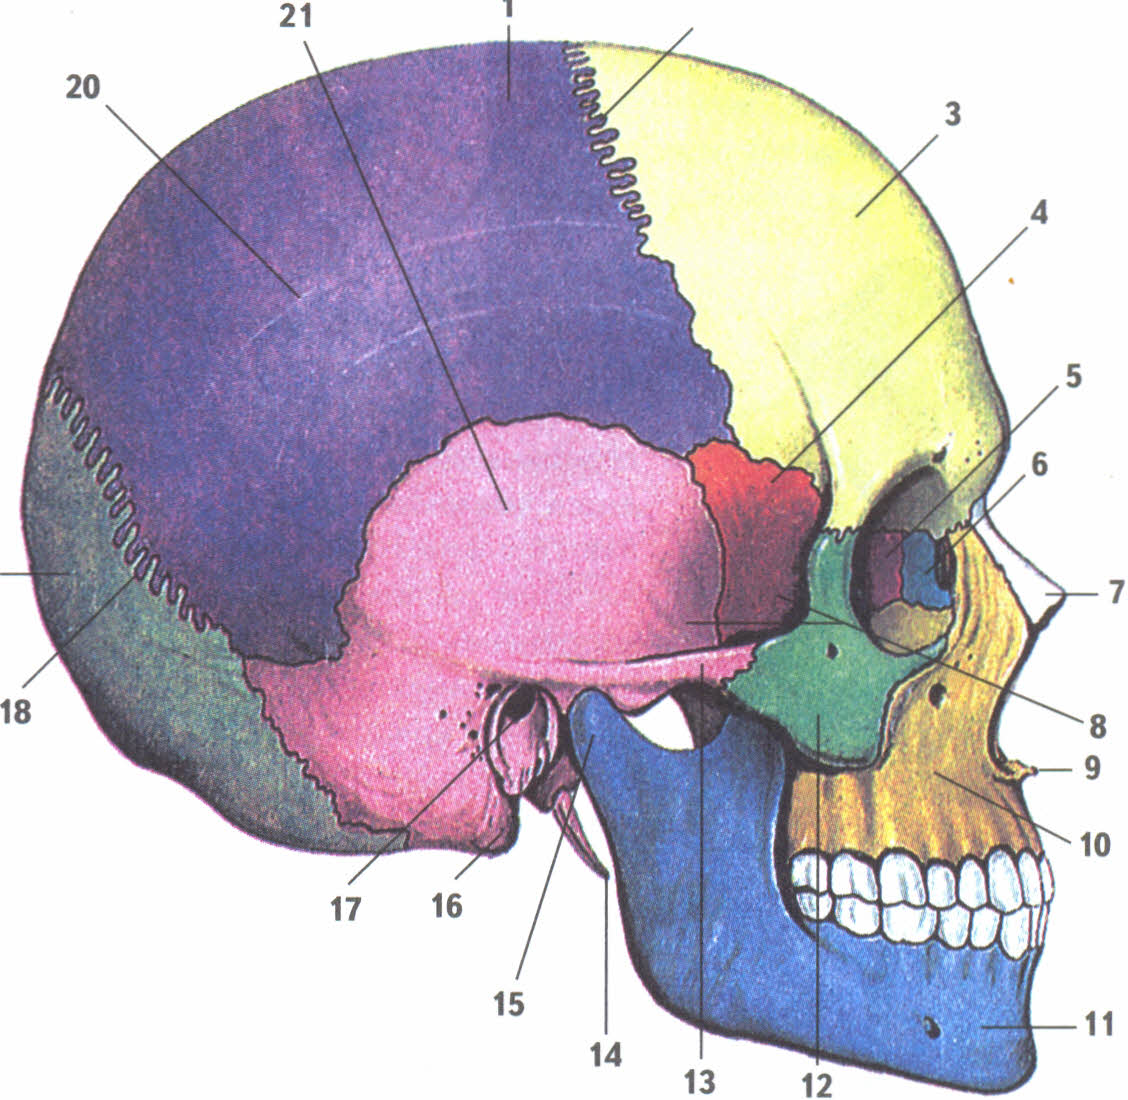 Все кости черепа соединены друг с другом. Кости черепа человека анатомия. Мозговой отдел черепа анатомия. Кости мозгового черепа и кости лицевого черепа. Анатомия костей мозгового отдела черепа.